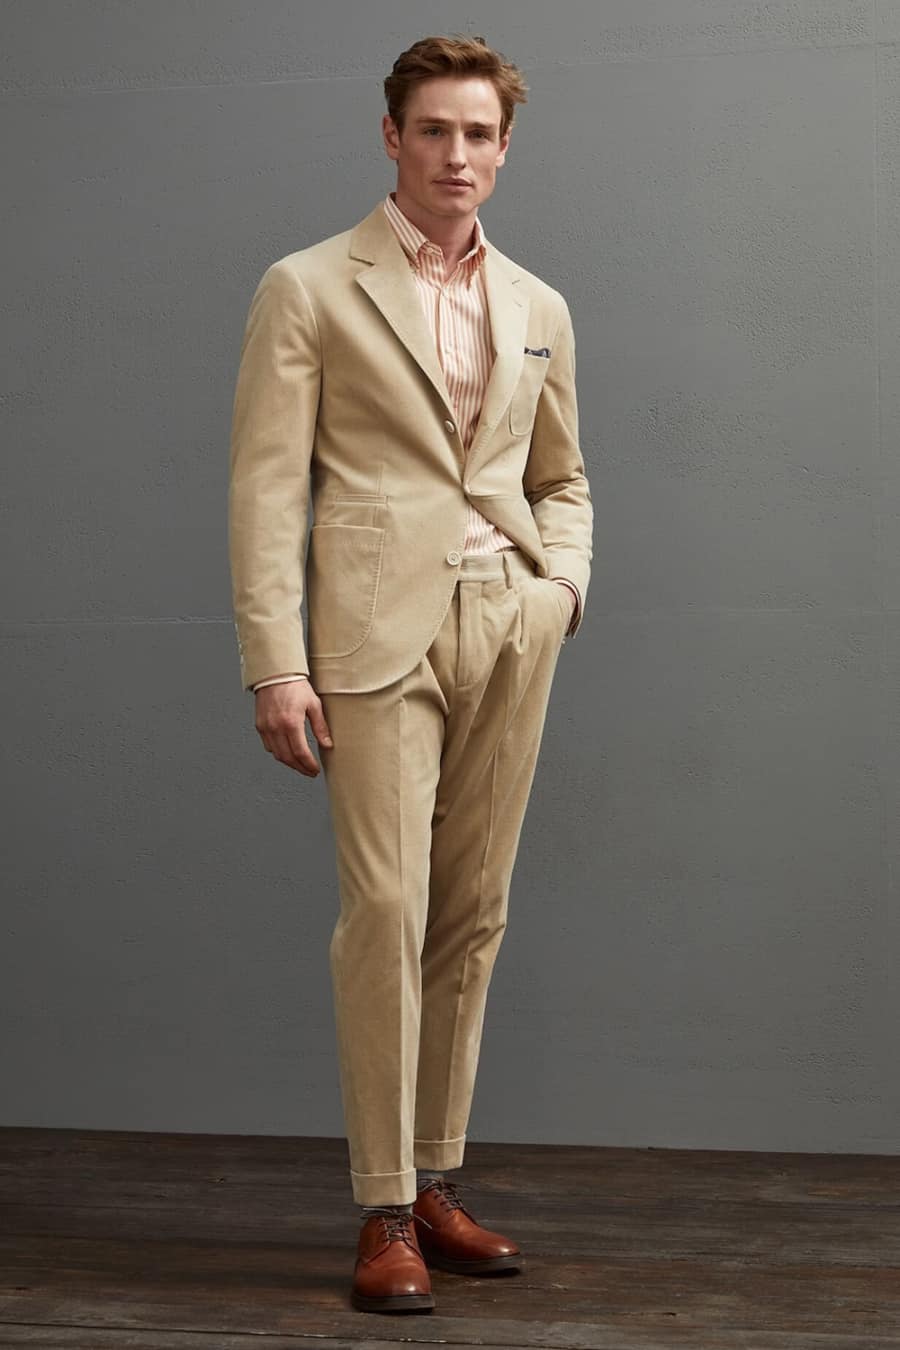 Men's beige corduroy suit worn with tan brown shoes